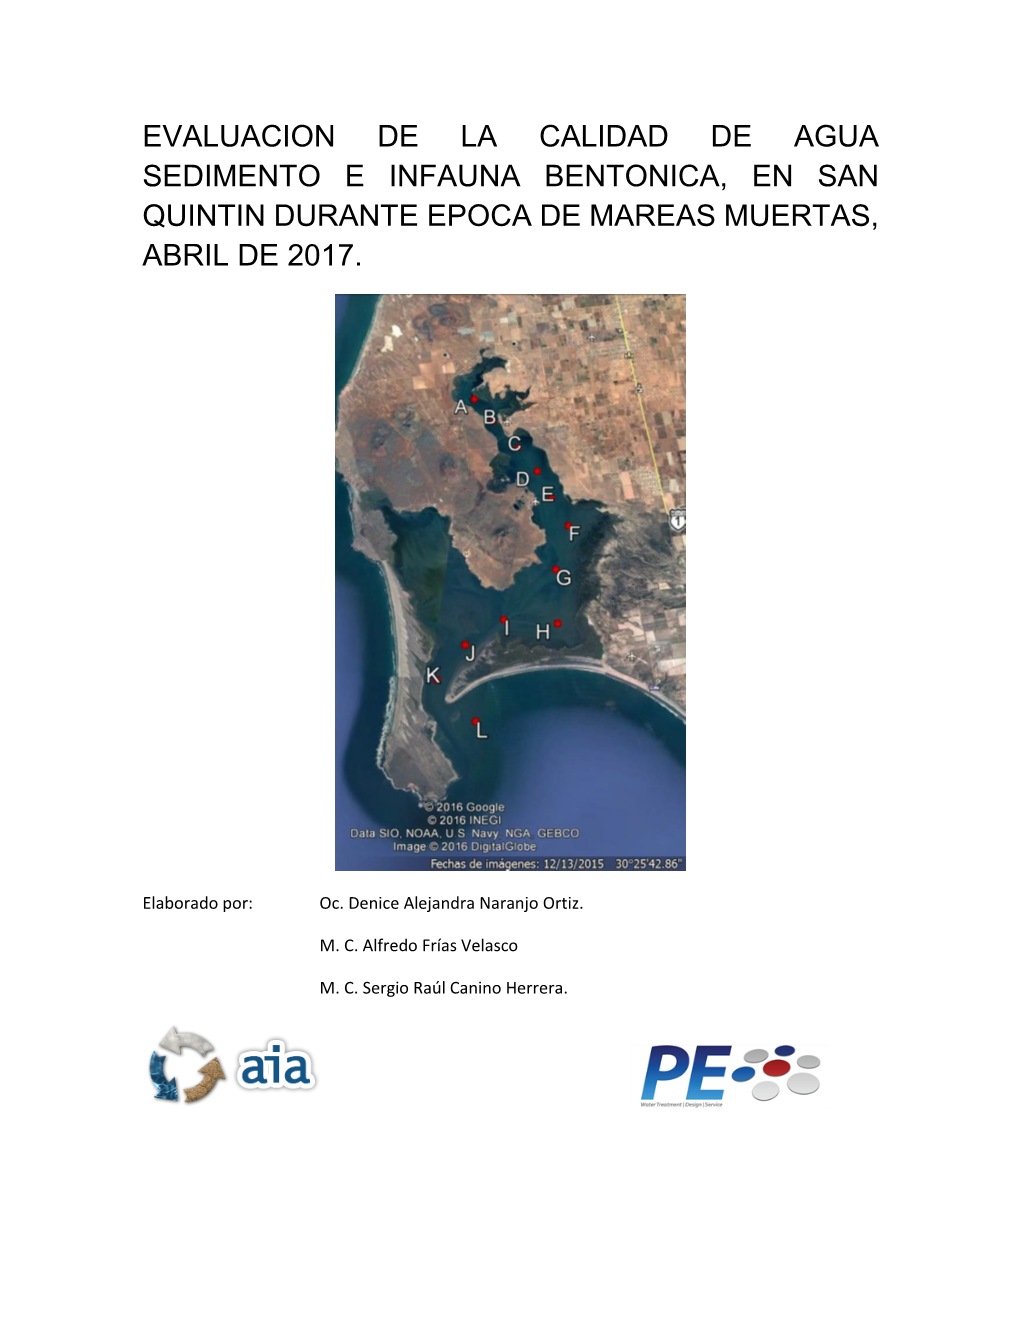 Evaluacion De La Calidad De Agua Sedimento E Infauna Bentonica, En San Quintin Durante Epoca De Mareas Muertas, Abril De 2017